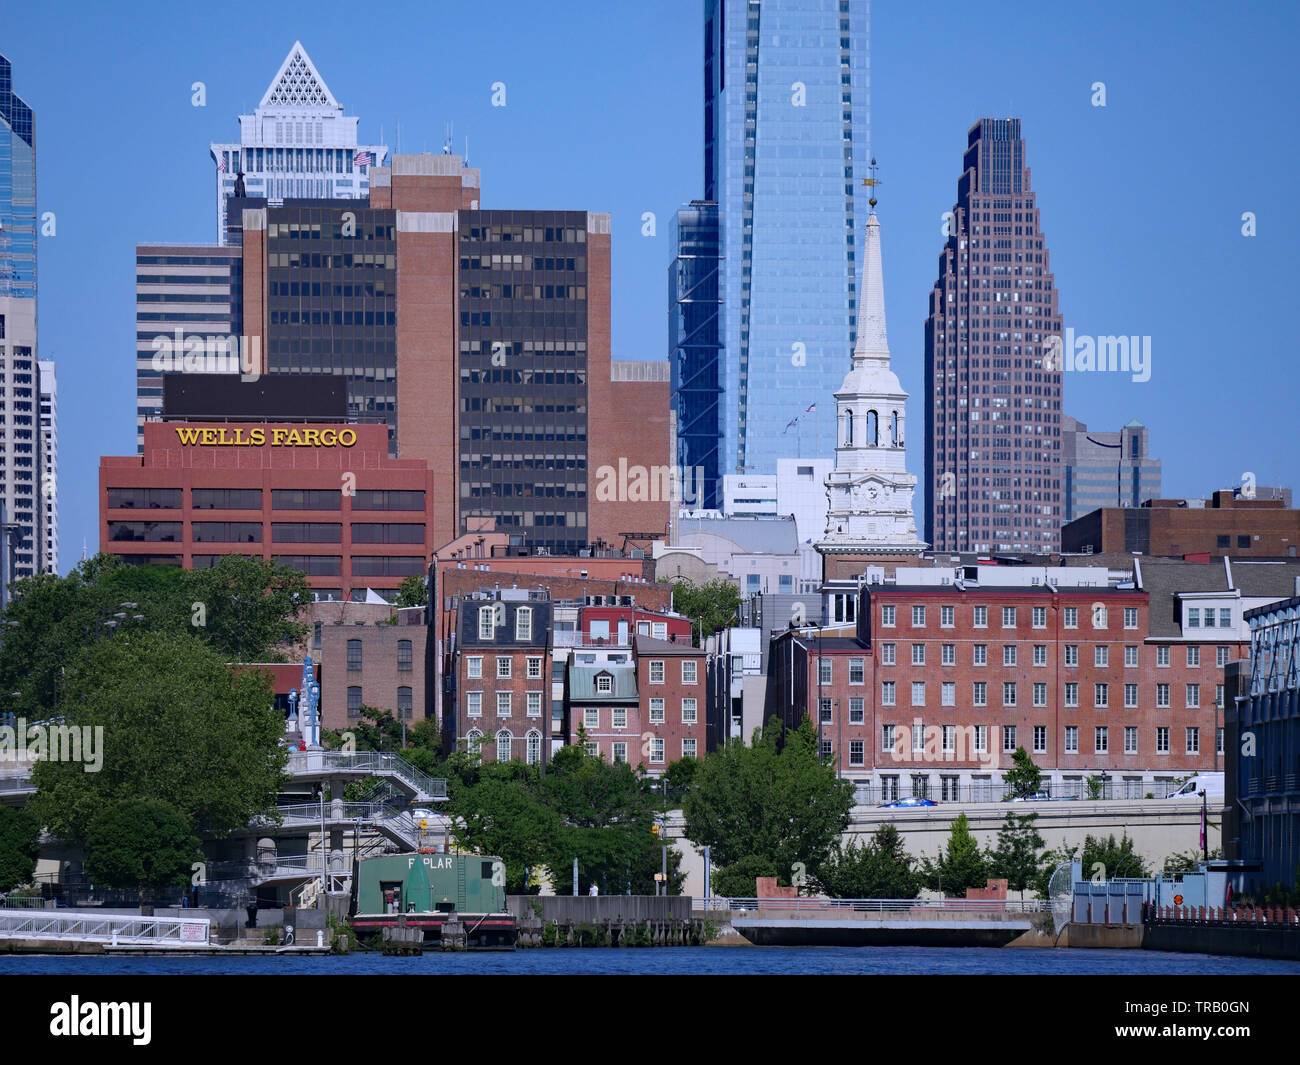 PHILADELPHIA - Mai 2019: A Waterfront Park in Camden, New Jersey, bietet einen schönen Blick auf die Skyline von Philadelphia über den Delaware River, einschließlich Stockfoto